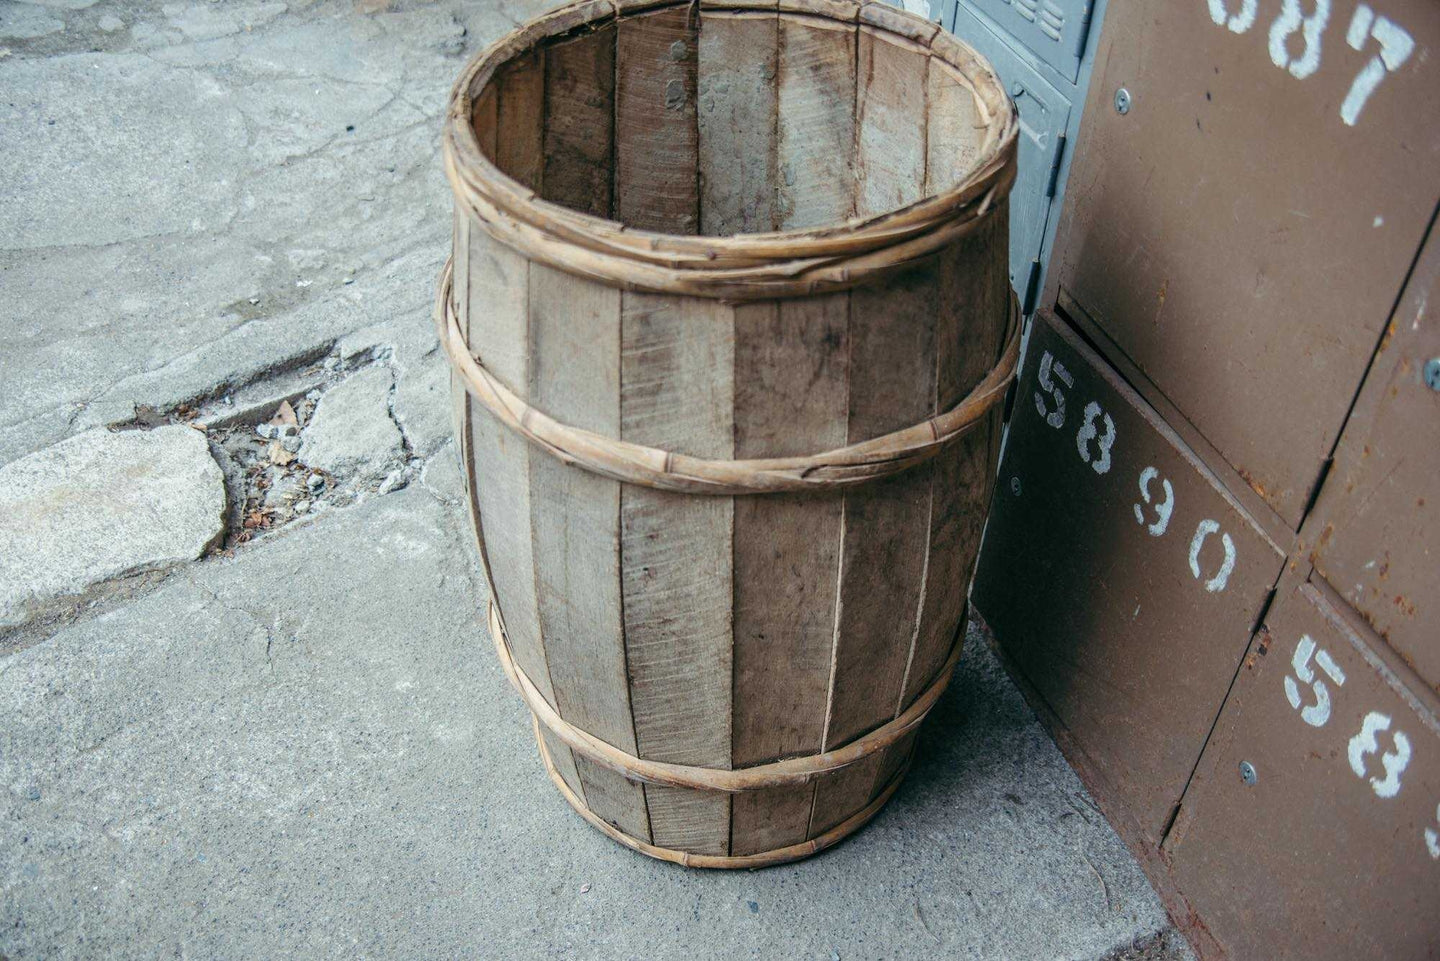 日本の古道具の樽